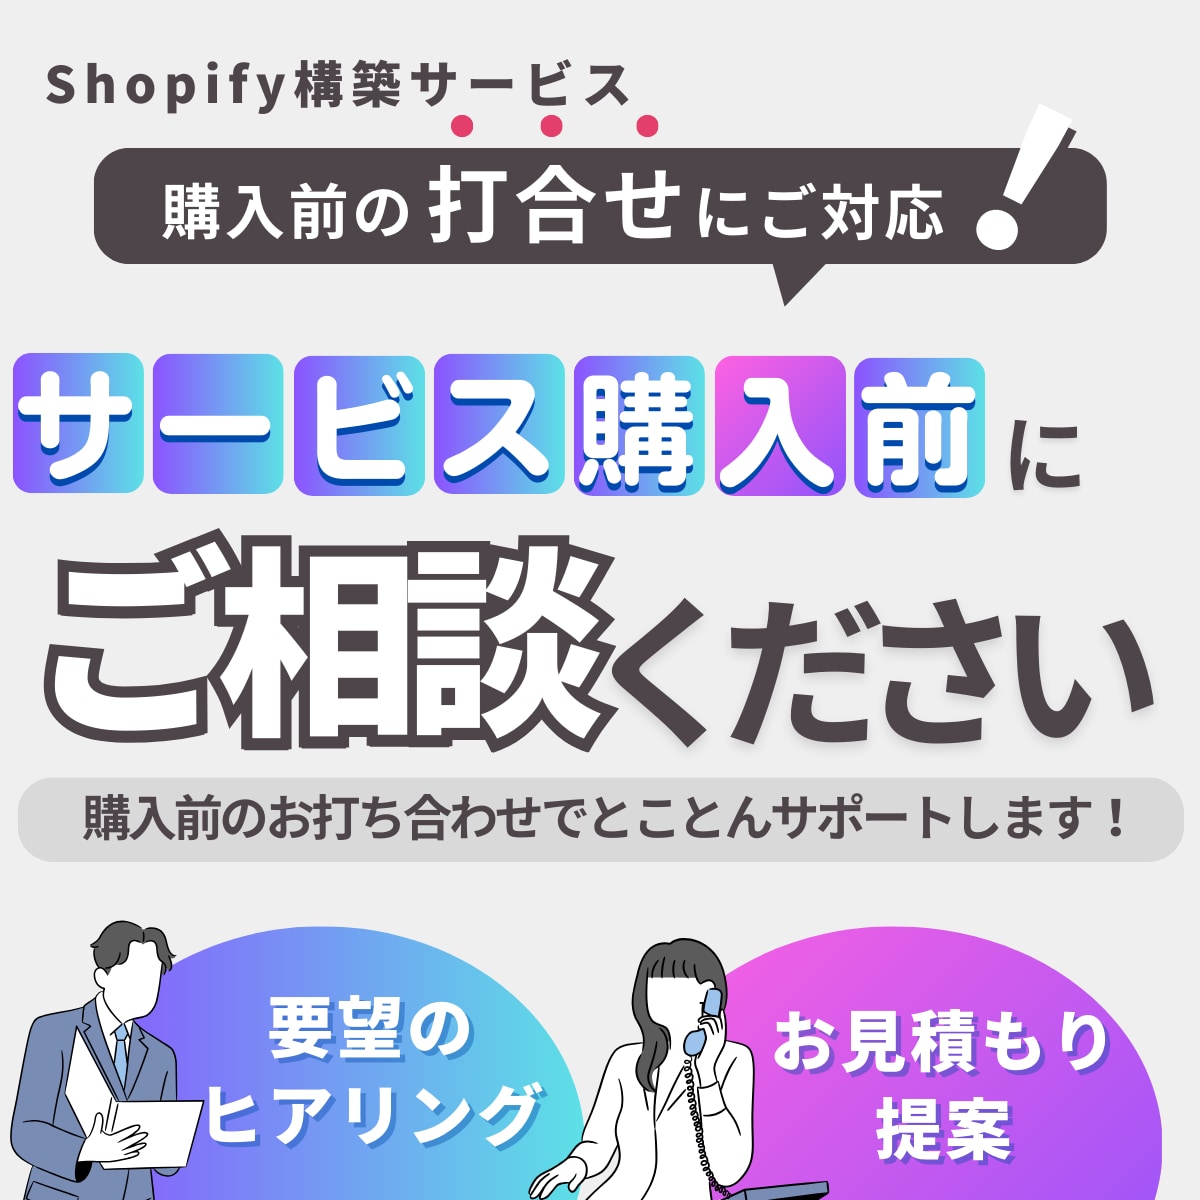 Shopify構築の購入前打ち合わせを行います 理想のECサイト制作へ向けて、プロの視点からご提案します。 イメージ1